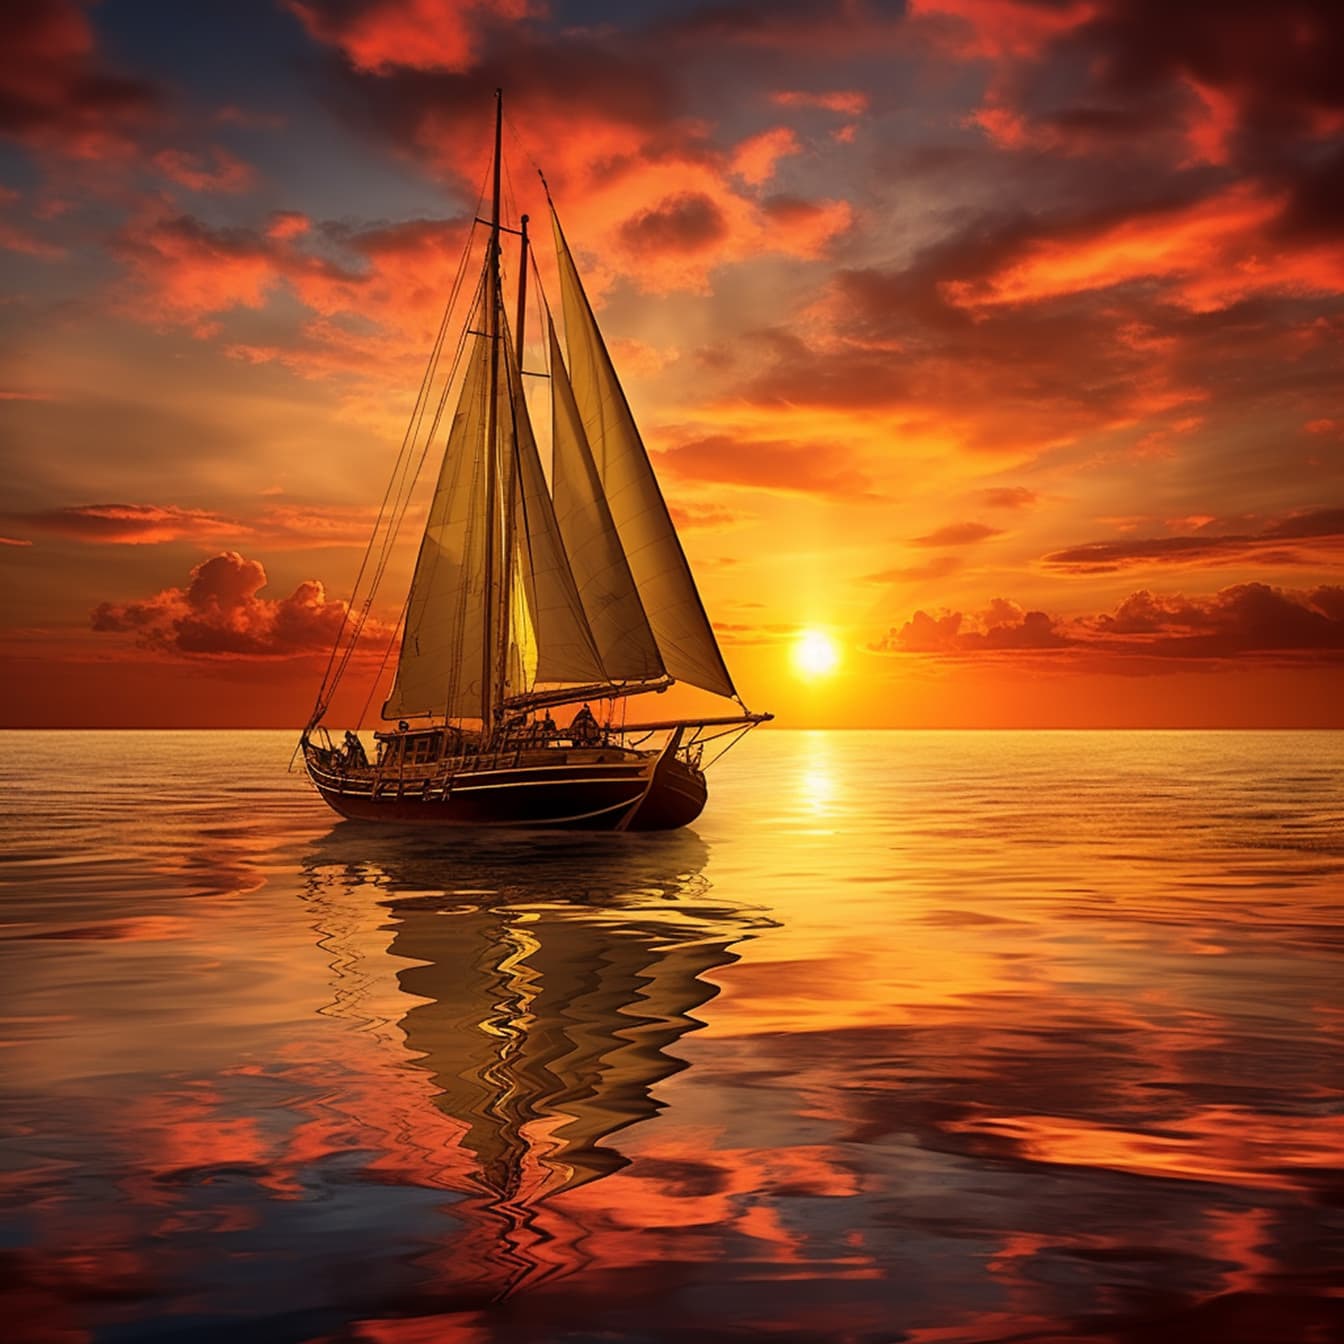 Piratsegelbåt i solnedgång med orange gul himmel